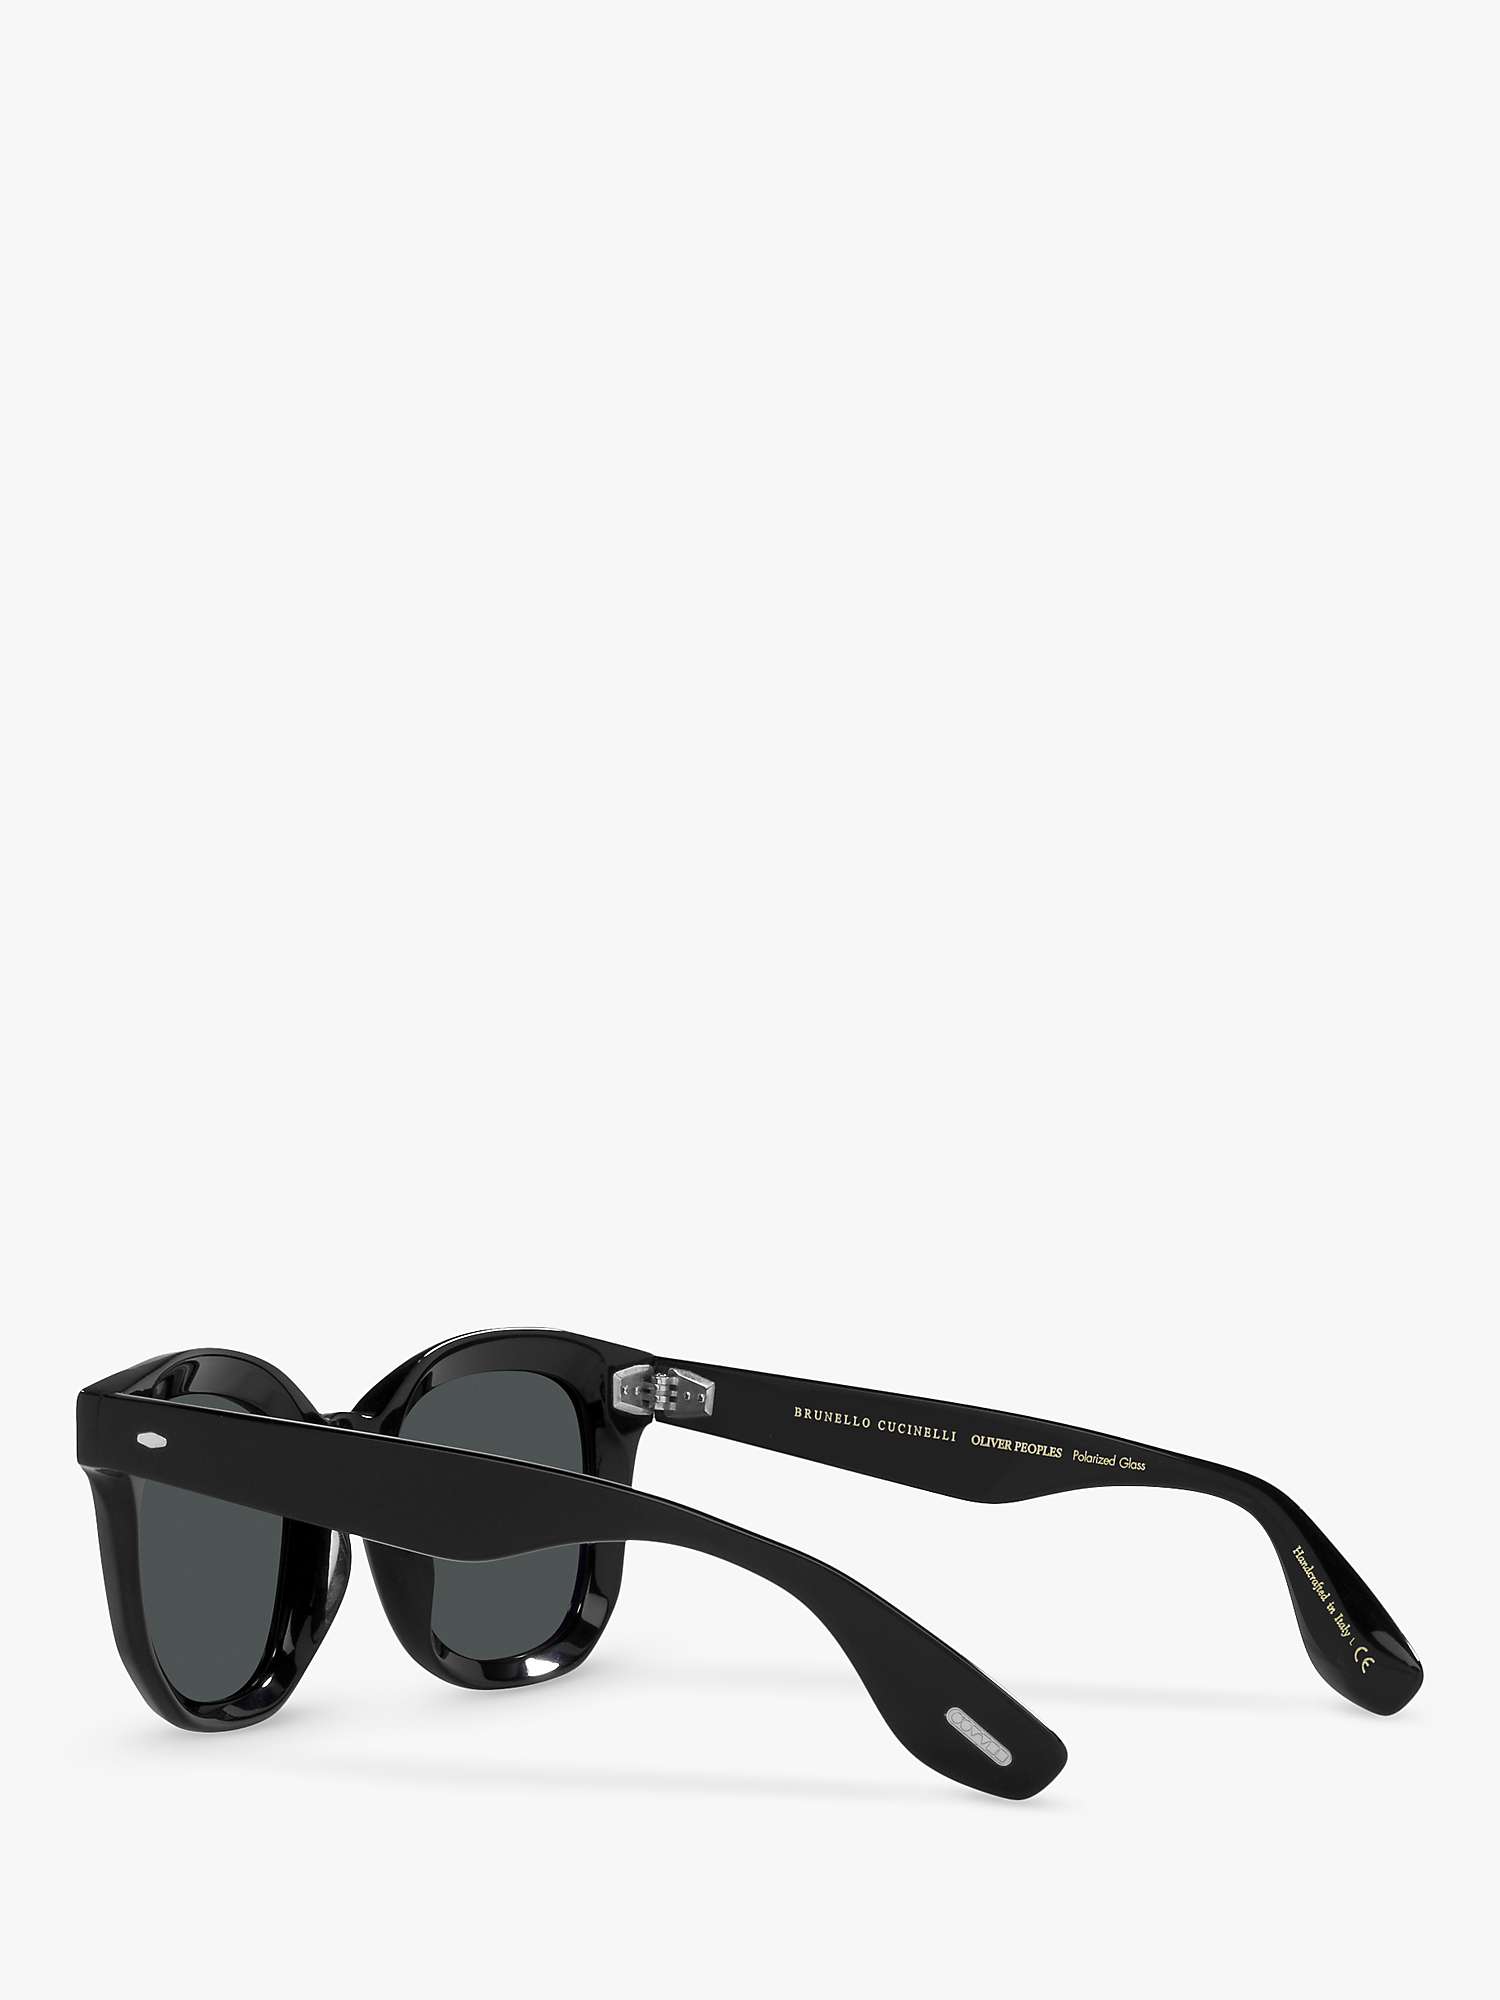 Buy Oliver Peoples OV5472SU Unisex Filu Polarised Sunglasses, Black/Grey Online at johnlewis.com